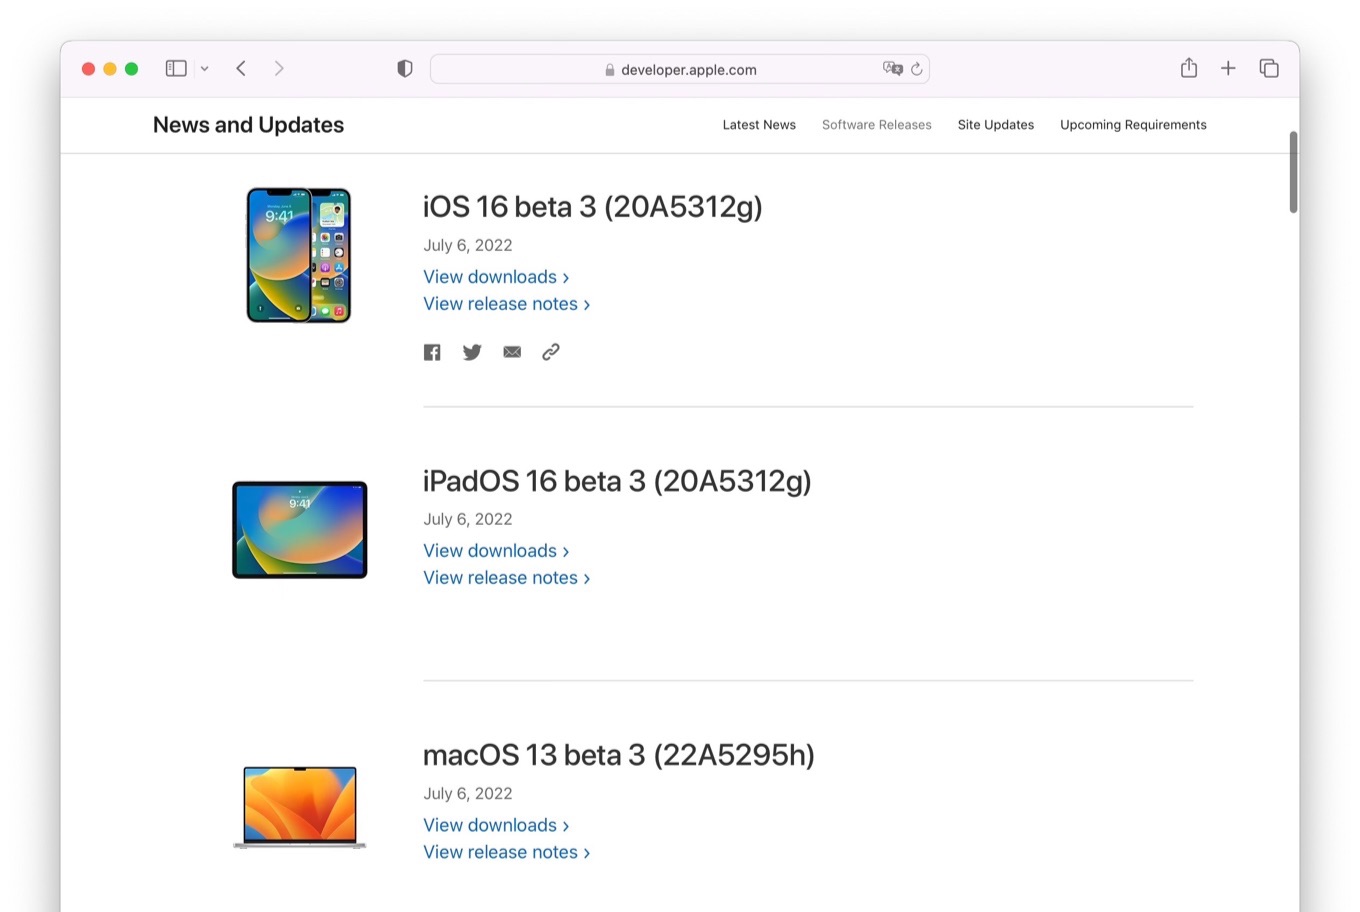 macOS 13 beta 3 (22A5295h)